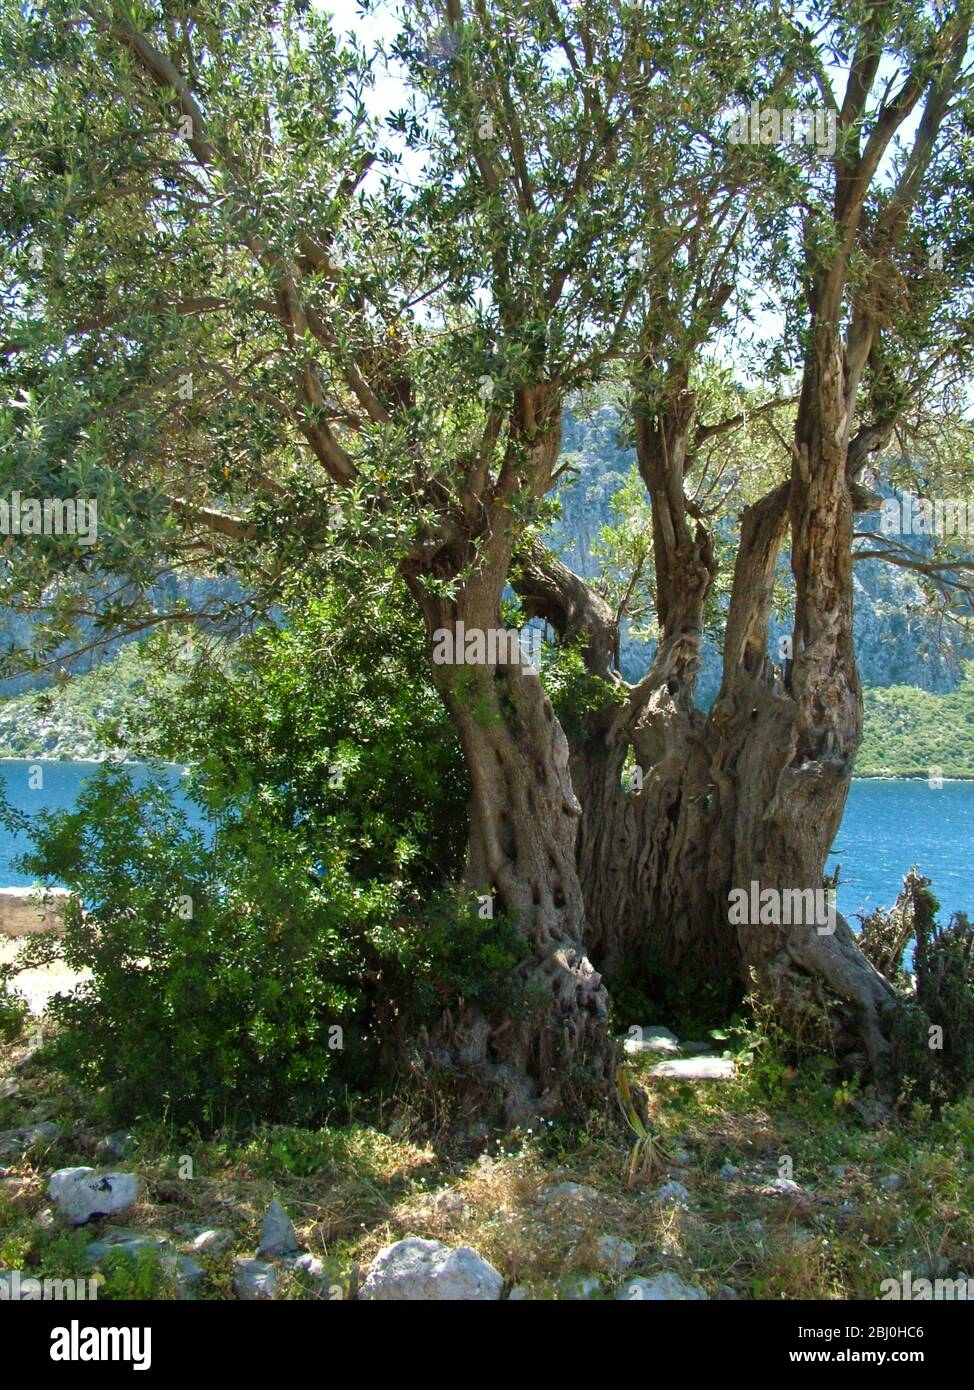 Uralter Olivenbaum, auf einer kleinen Insel vor der südlichen türkischen Küste. - Stockfoto